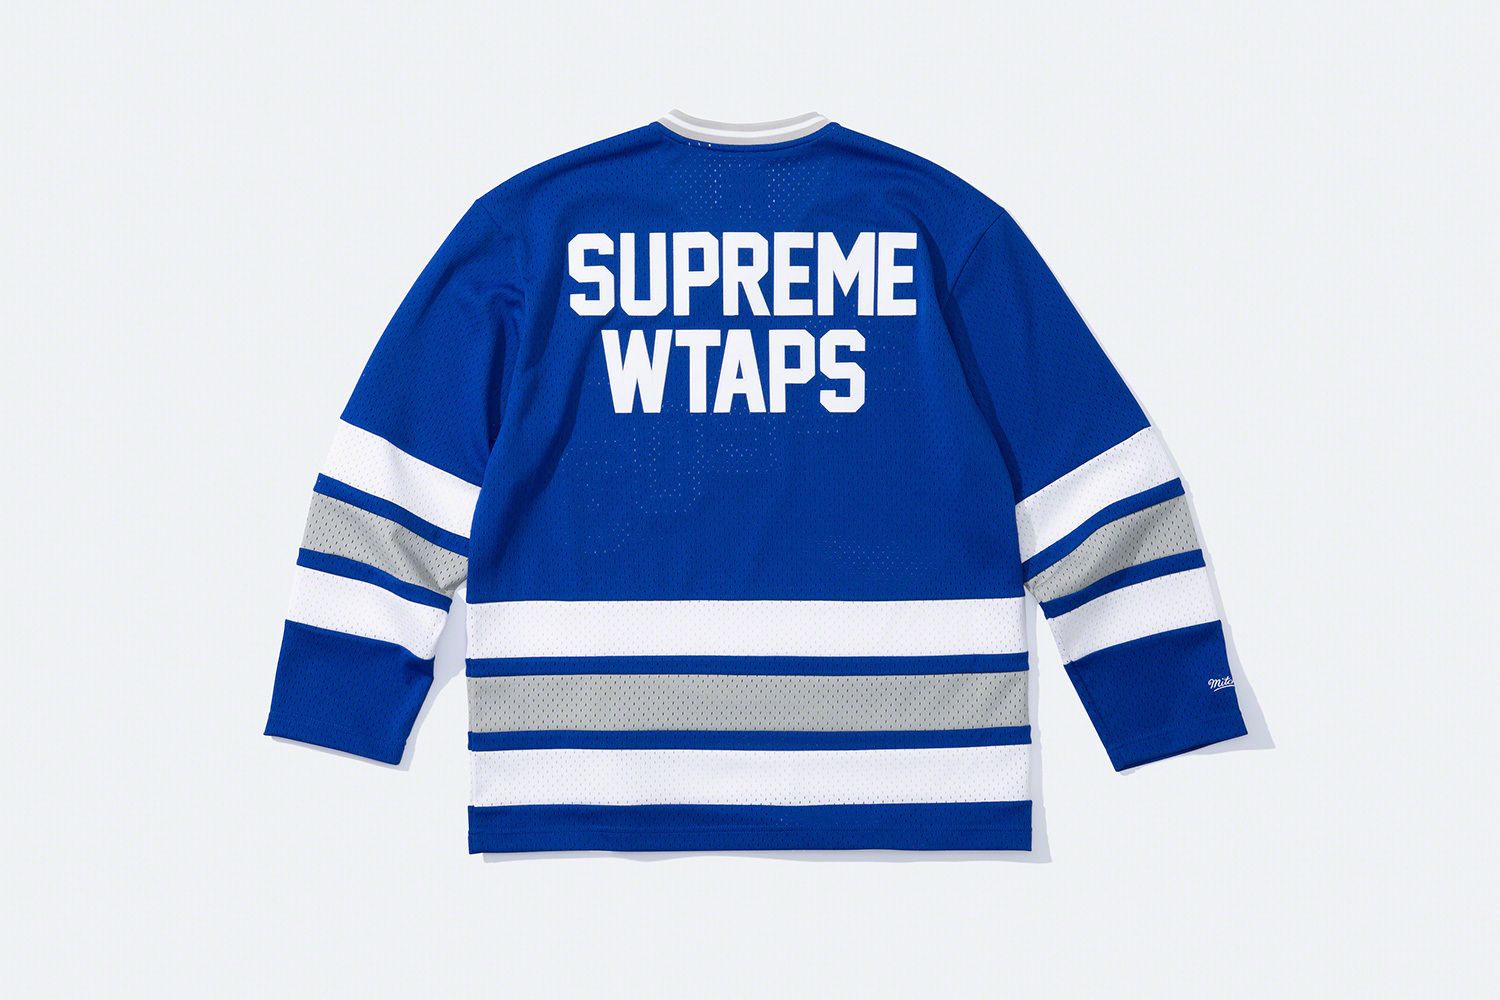 Supreme®/WTAPS® – Supreme